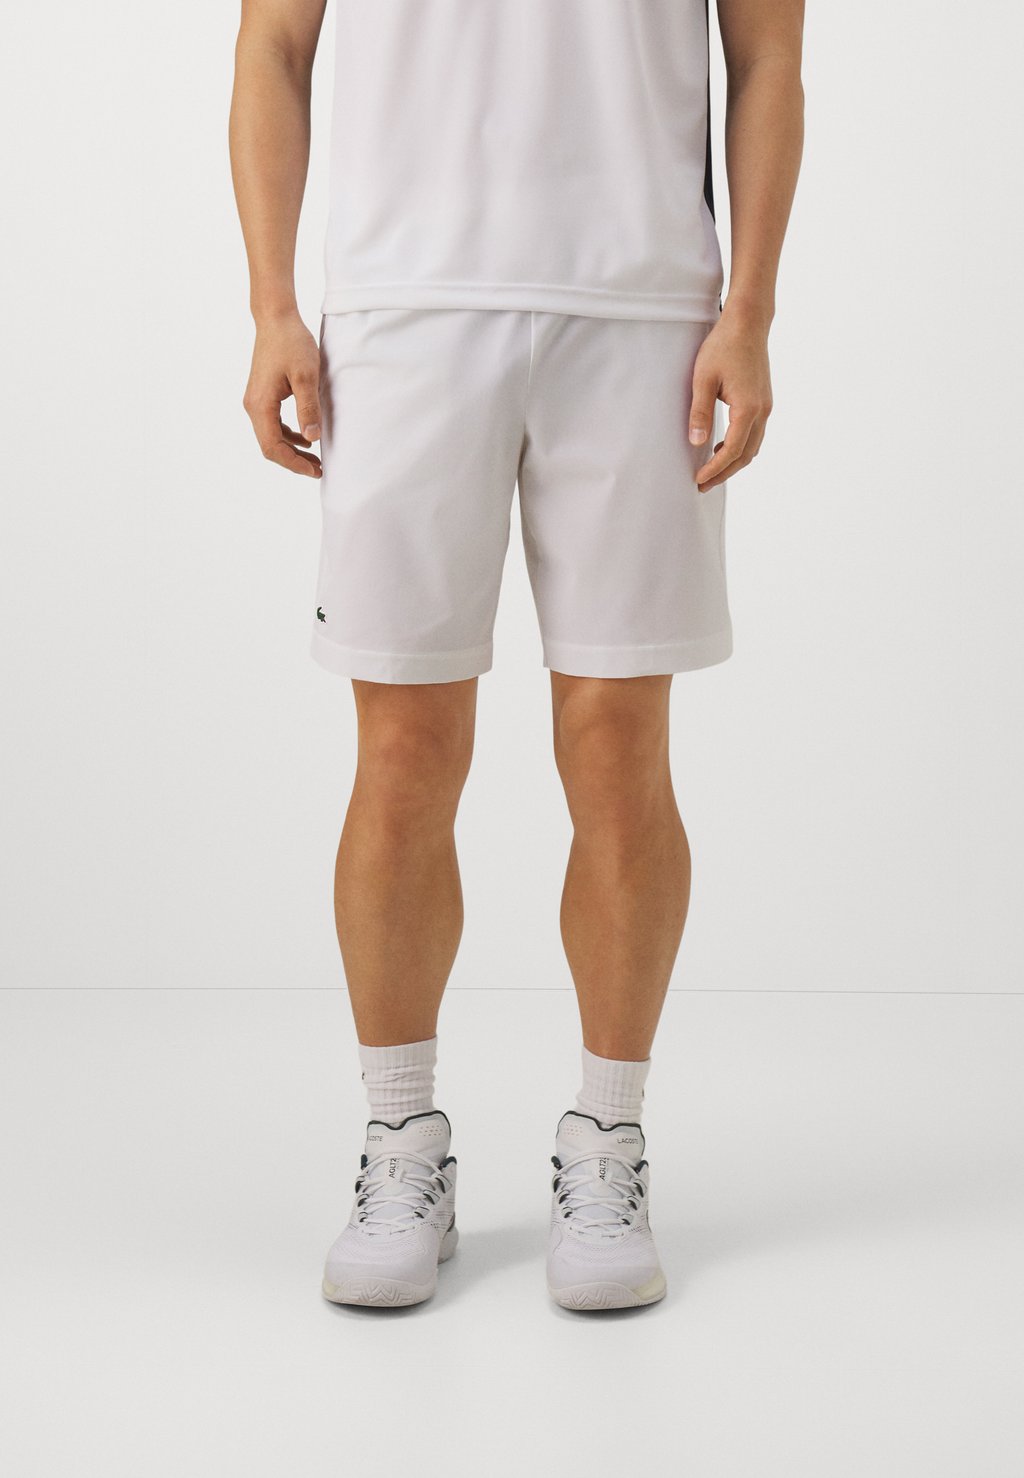 Спортивные шорты Sports Shorts Lacoste, белый спортивные шорты sports shorts lacoste цвет navy blue